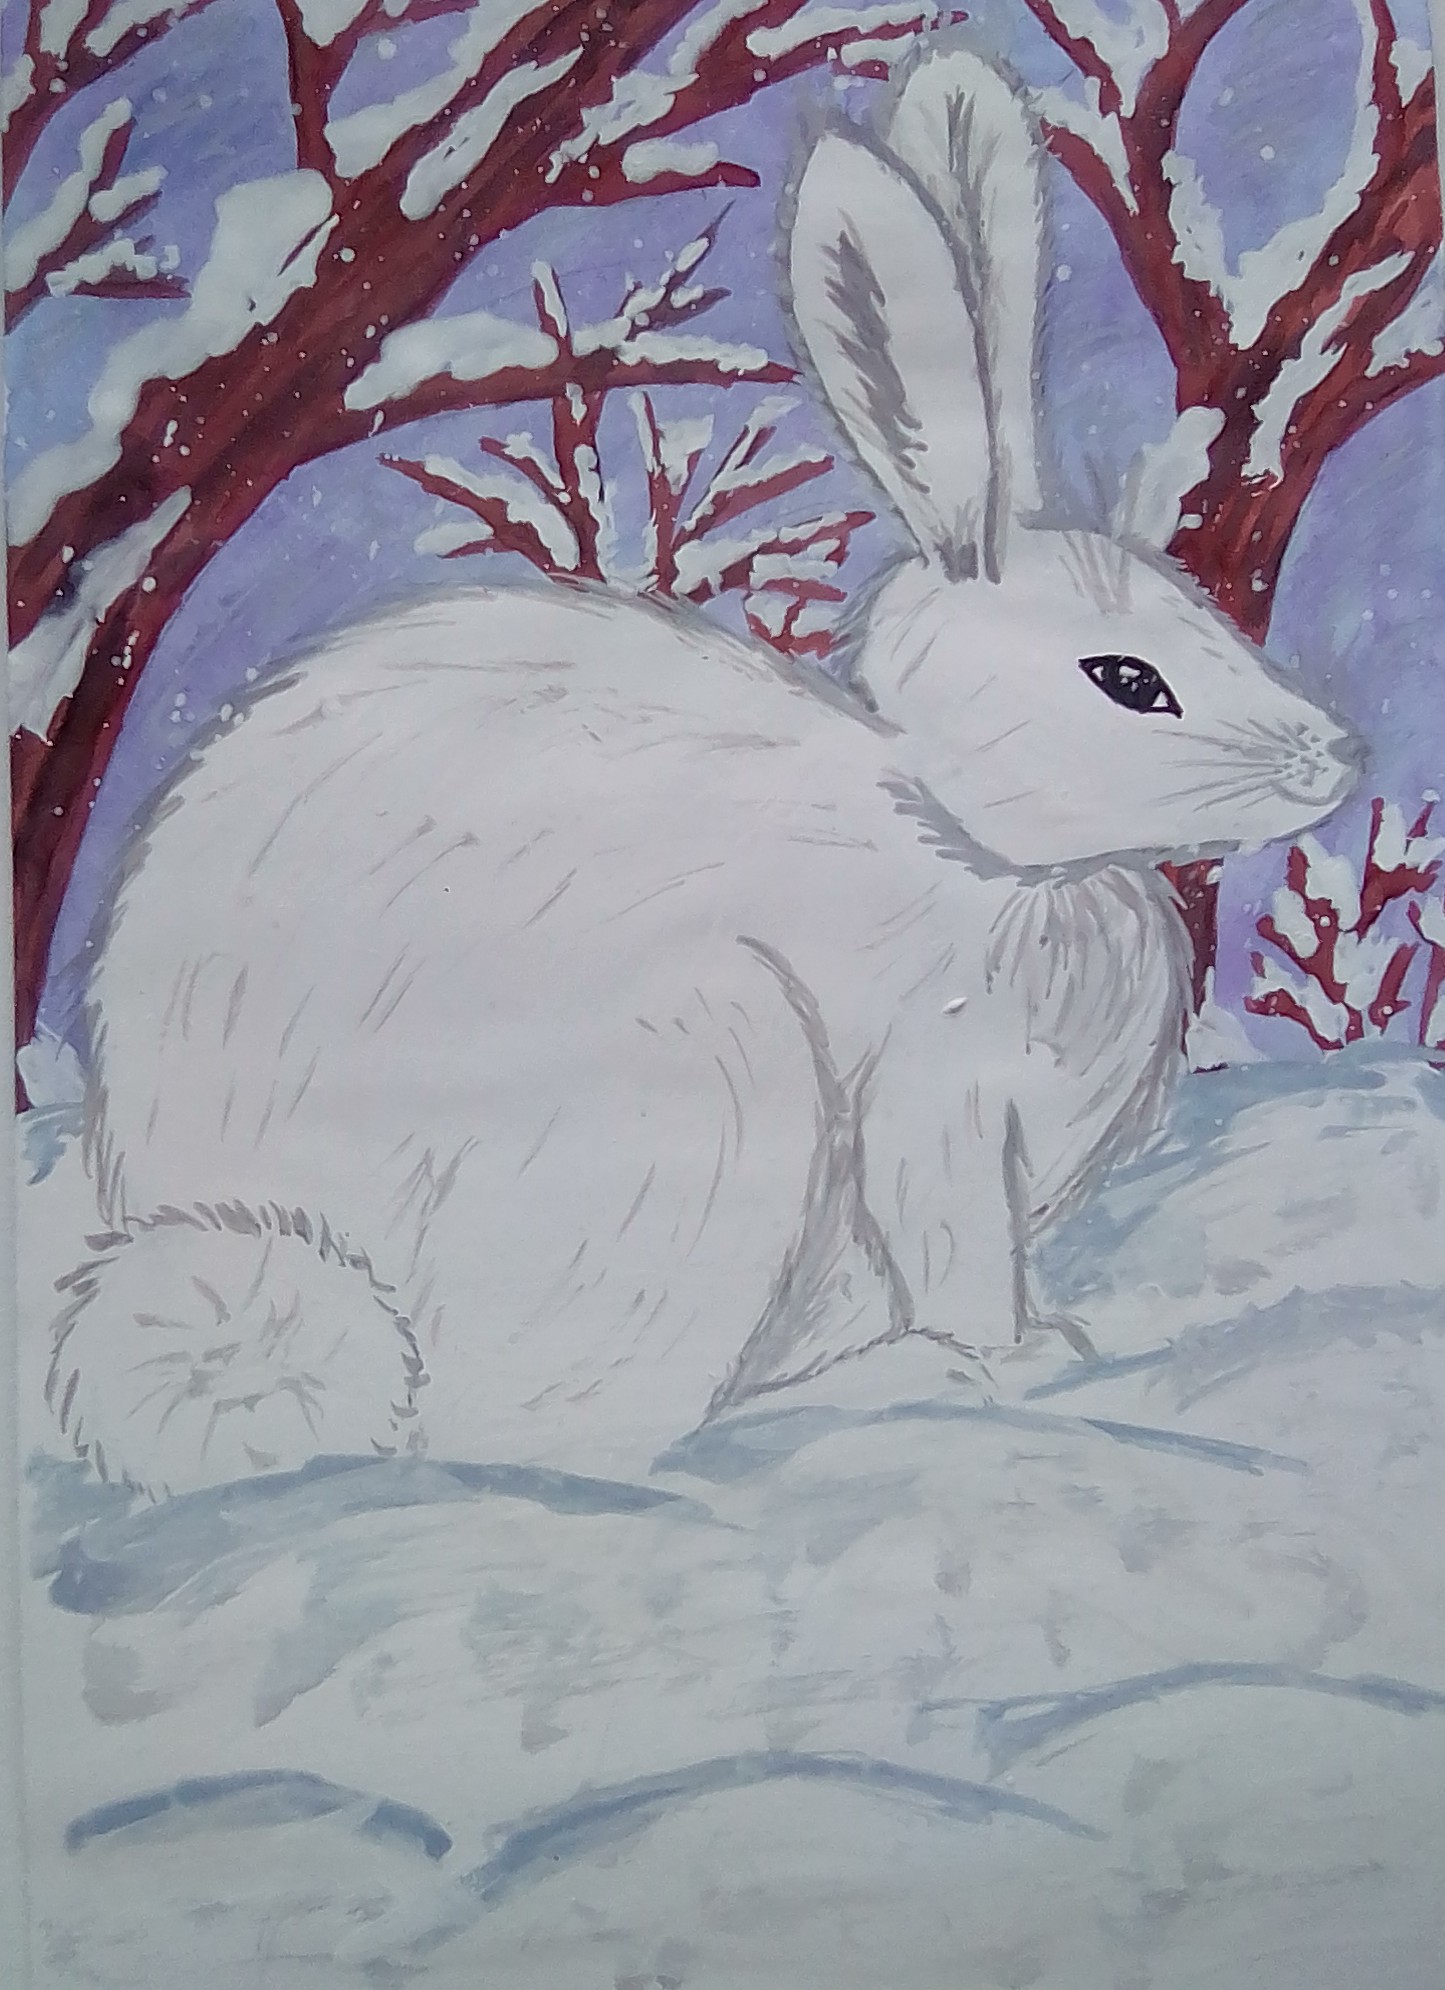 Рисование зайца